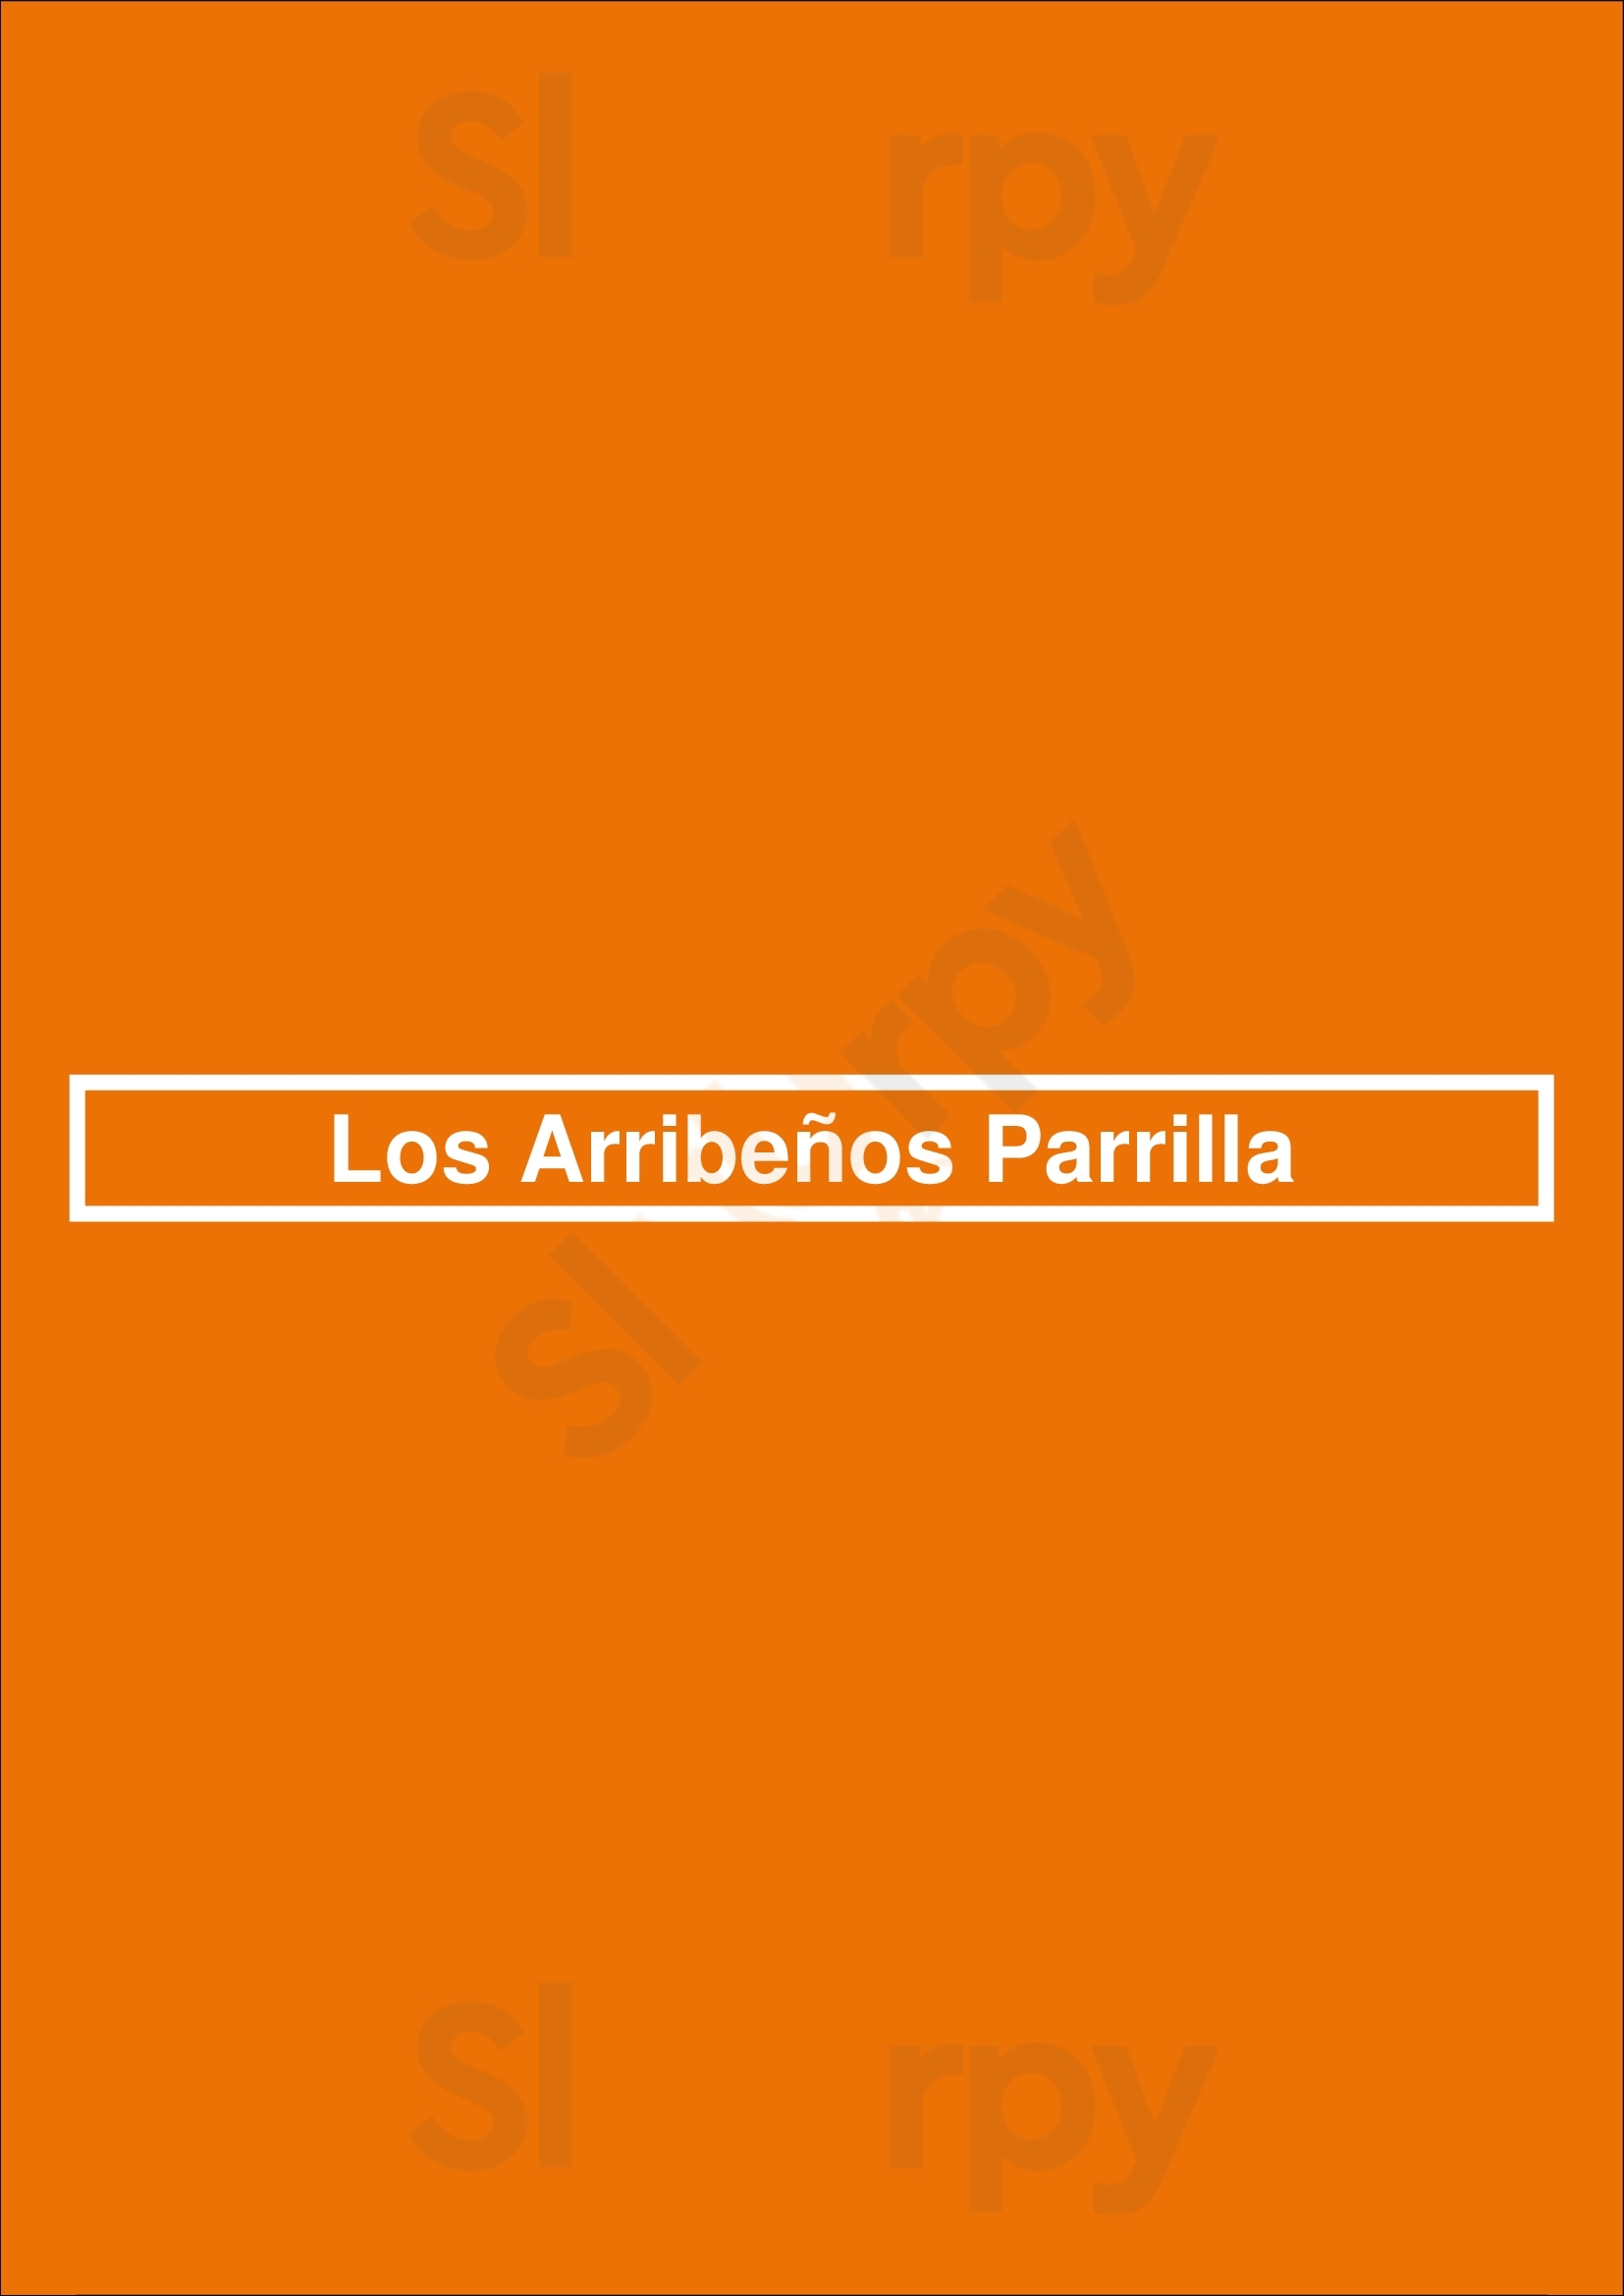 Los Arribeños Parrilla Buenos Aires Menu - 1